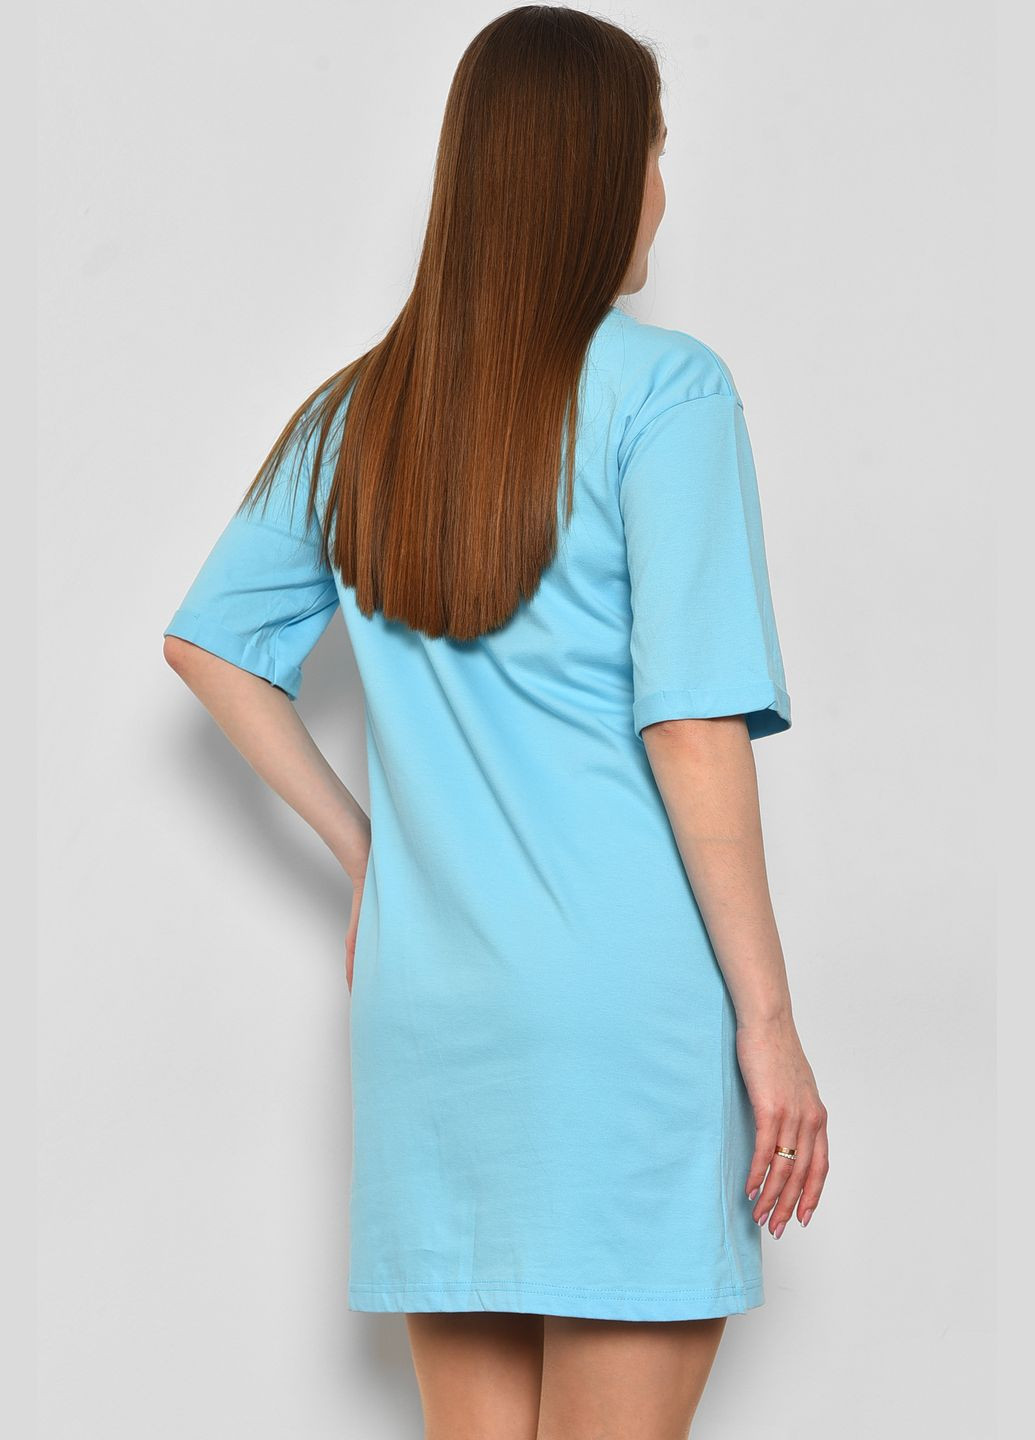 Жіноча туніка з тканини лакоста блакитного кольору. Let's Shop (292630395)